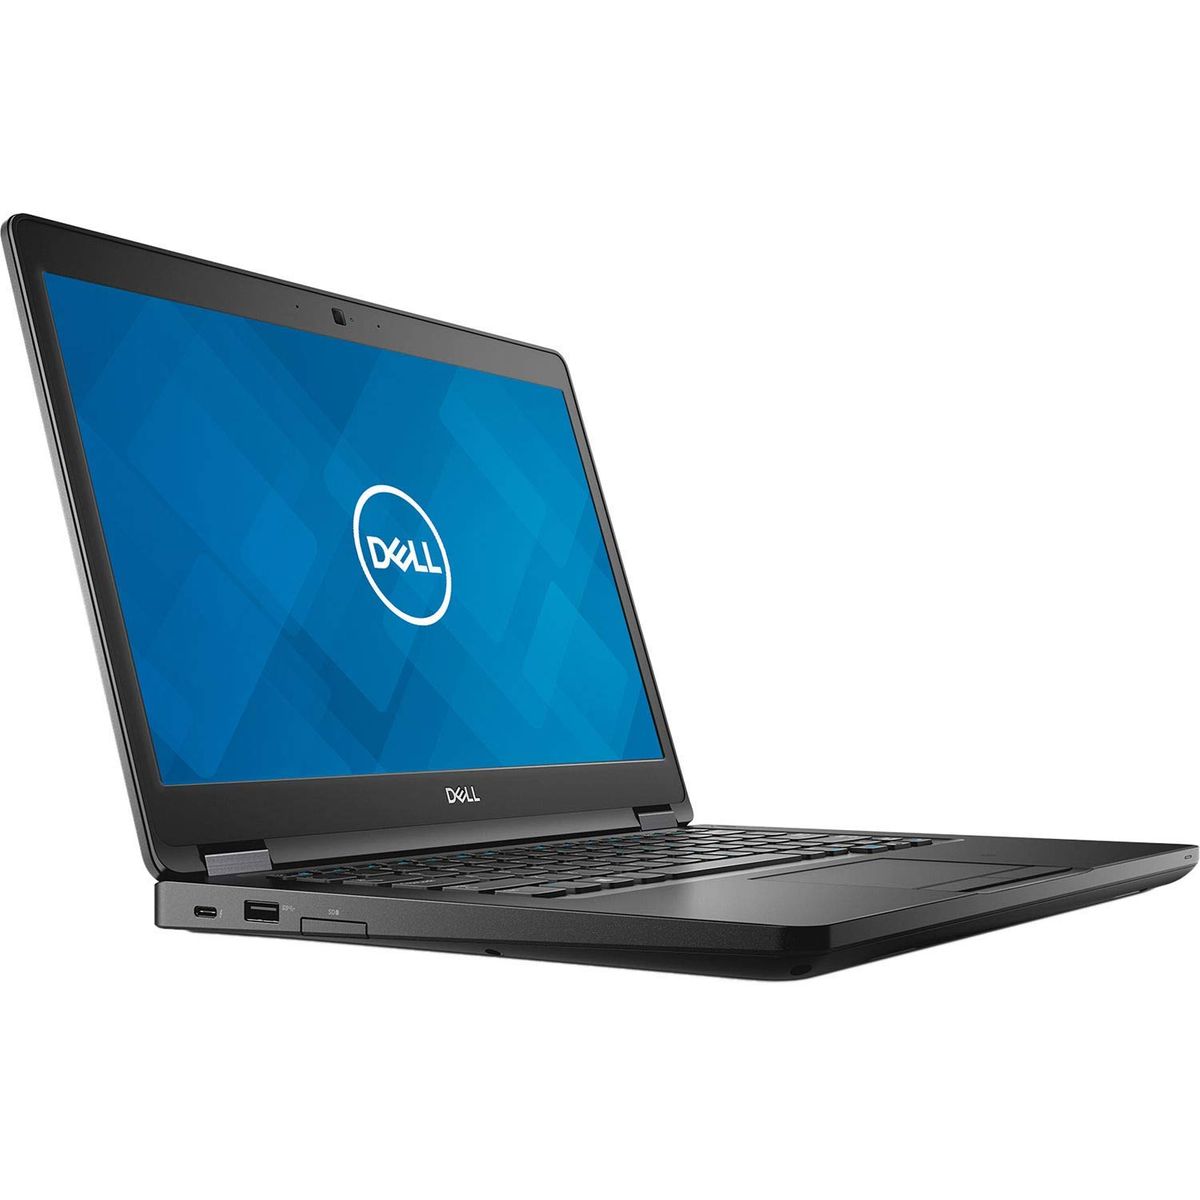 Dell Latitude 14 5490 Laptop (7th Gen Core i5/ 16GB/ 256GB SSD/ Win 10 Pro)  Price in India 2023, Full Specs & Review | Smartprix